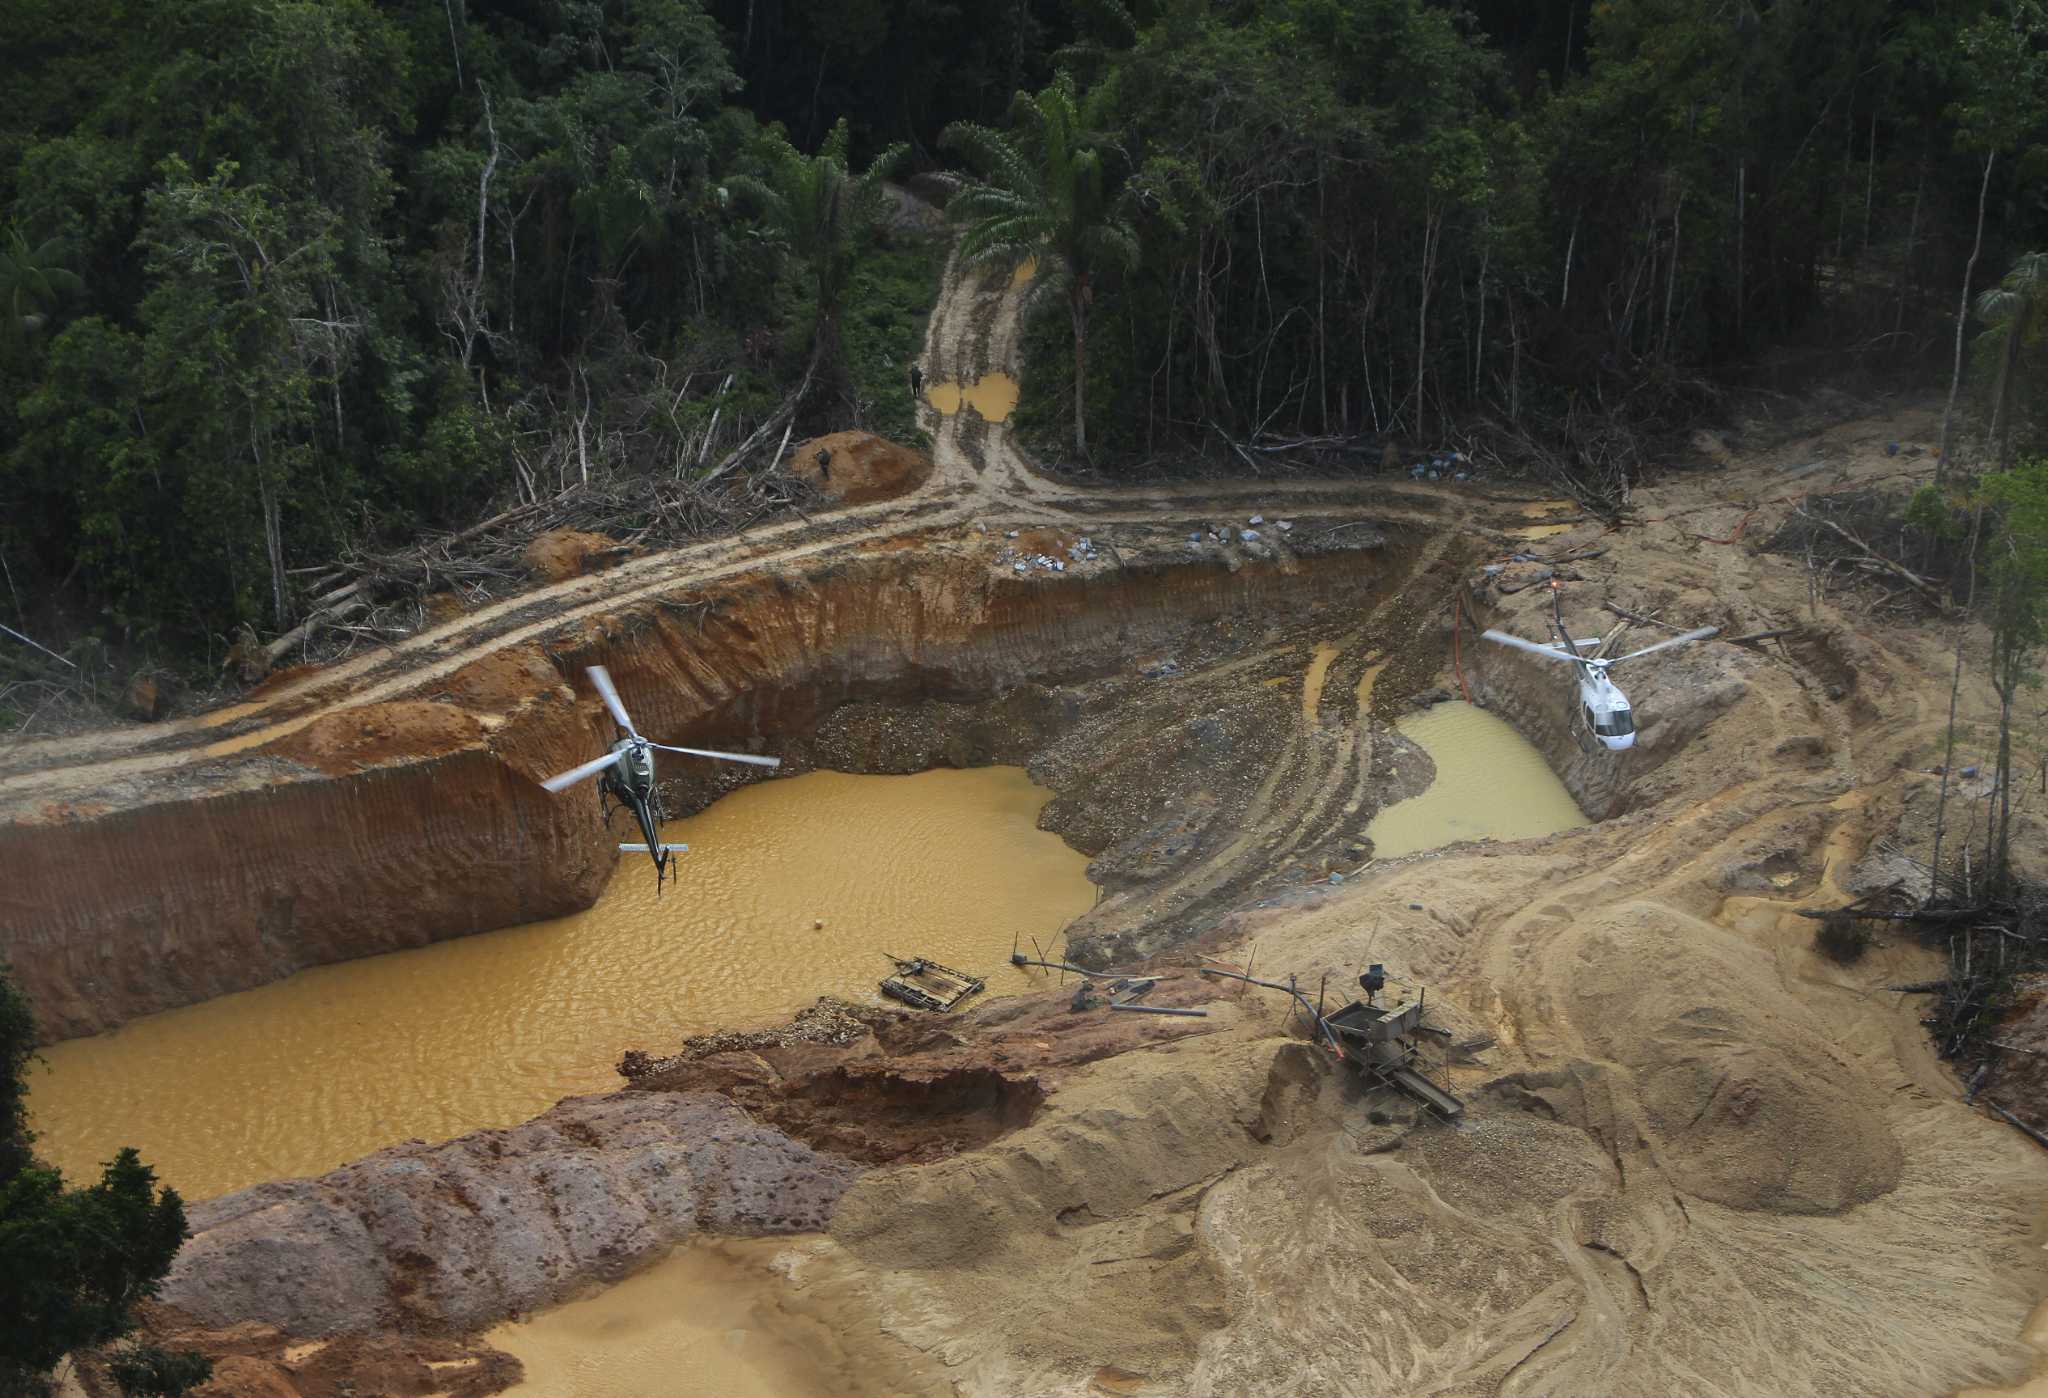 Tribu amazónica yanomami muestra altos índices de exposición al mercurio, según informe